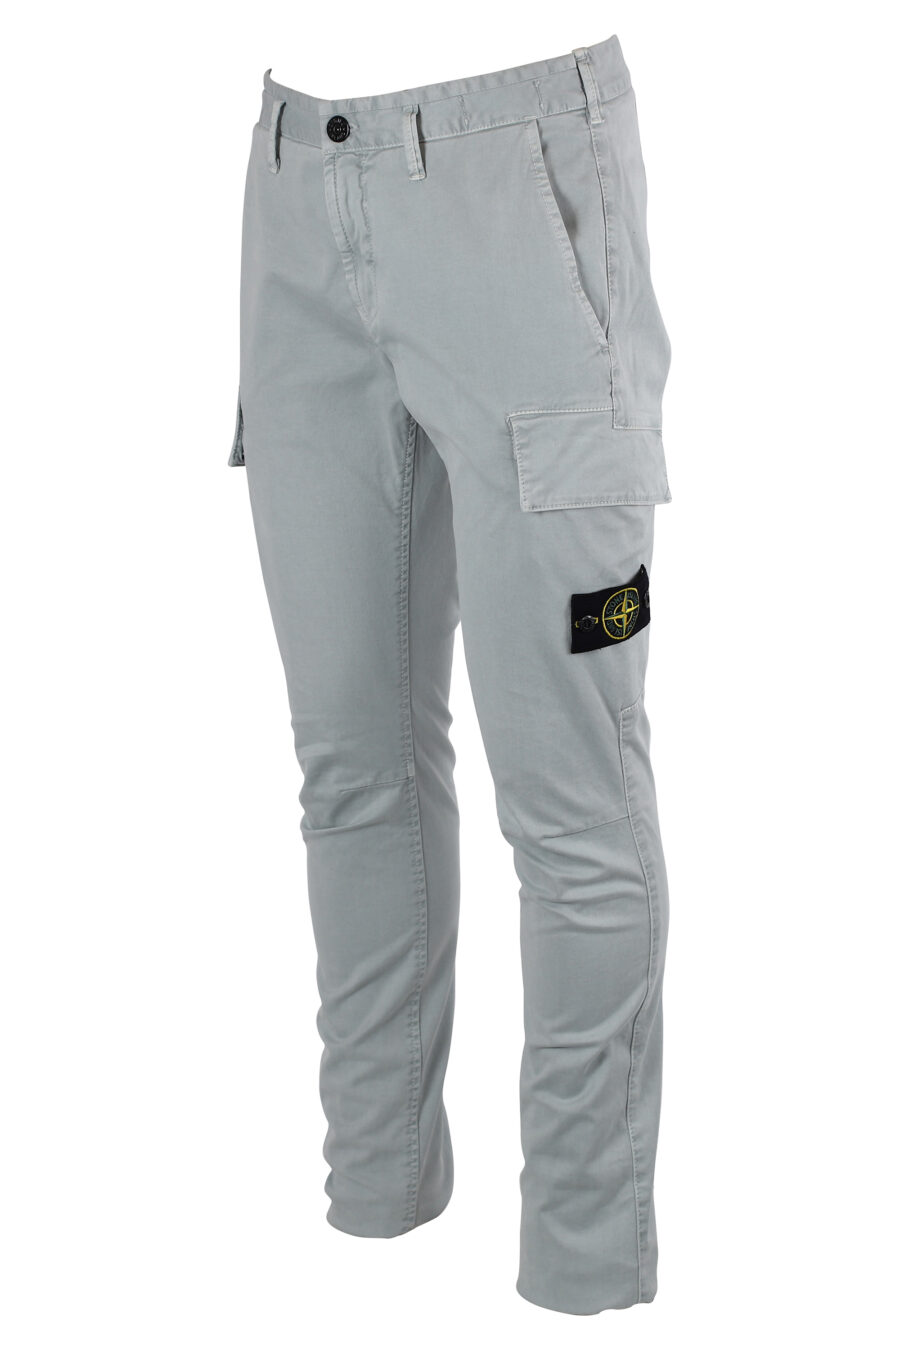 Pantalon gris clair avec poches et empiècement latéral - IMG 8334